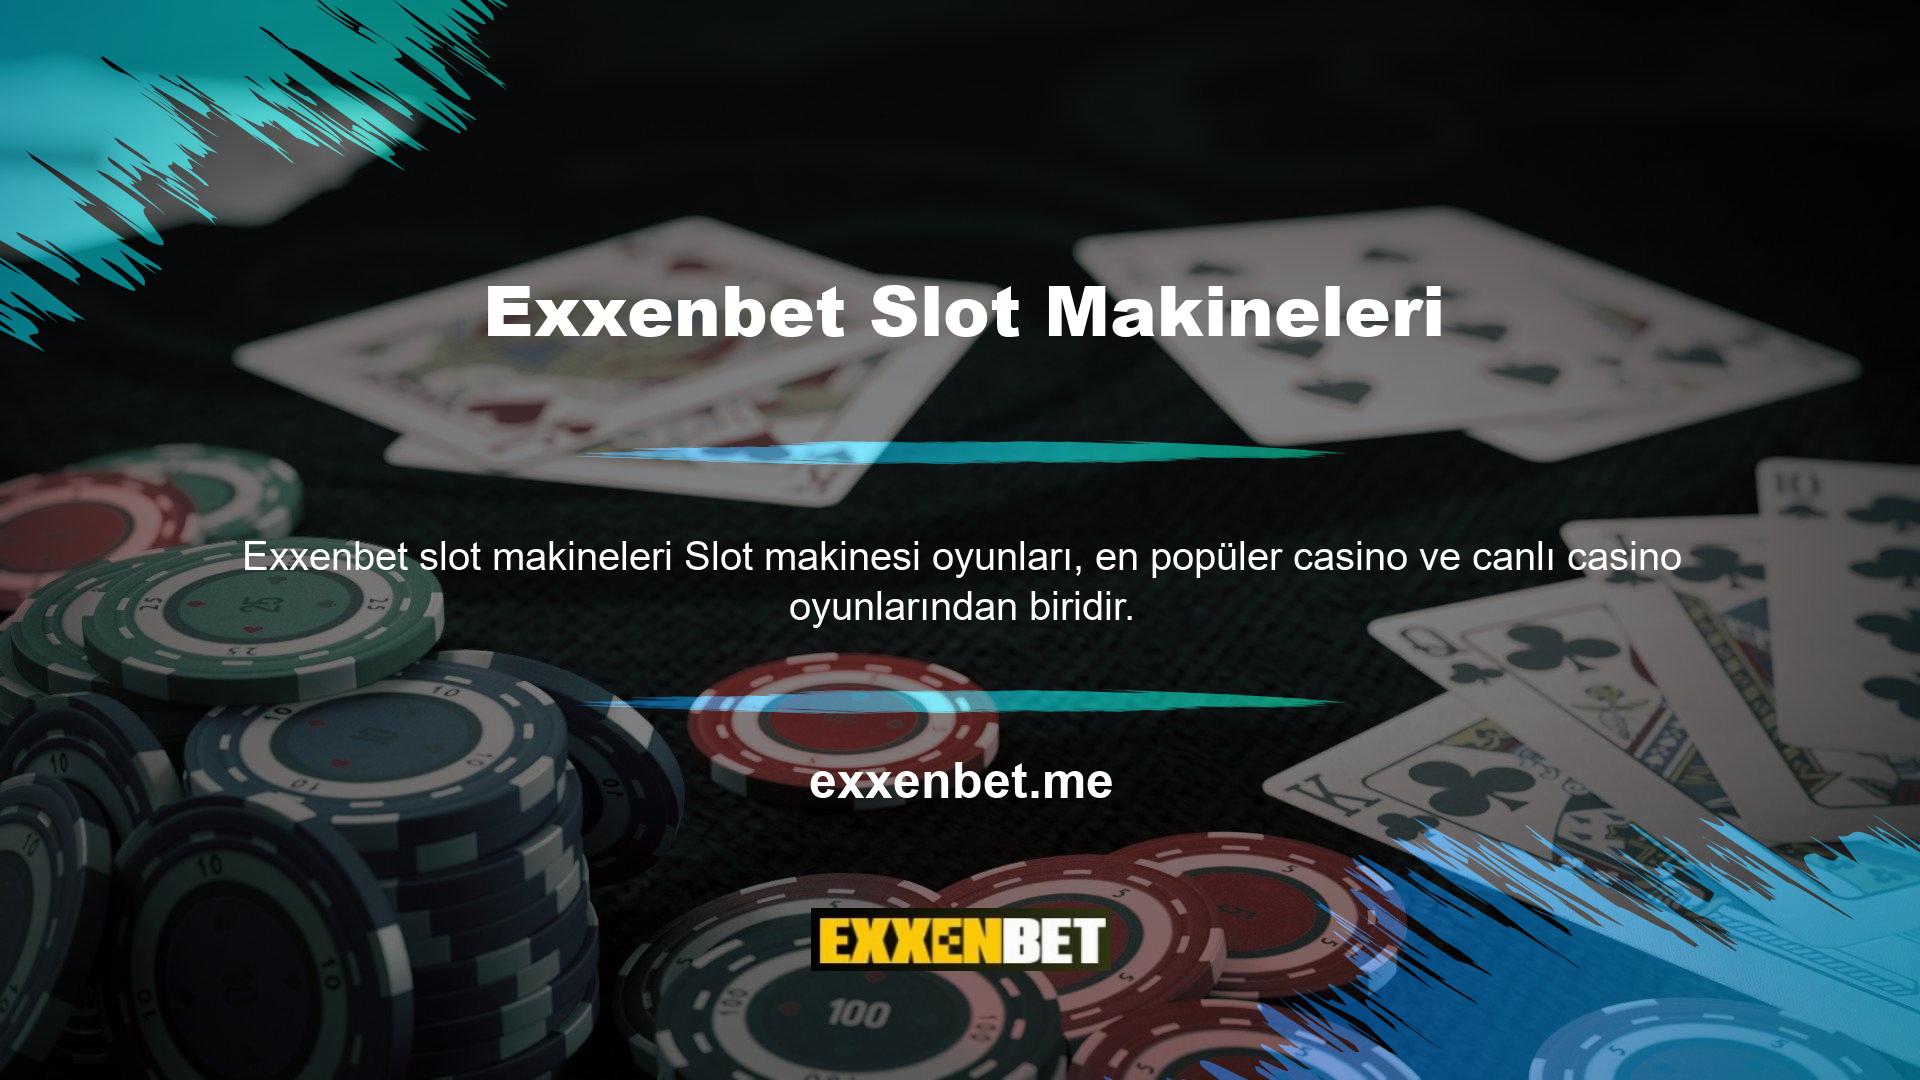 Exxenbet Slots, herkesin kolayca seçebileceği fazla oyun seçeneğine ve oyuna sahiptir